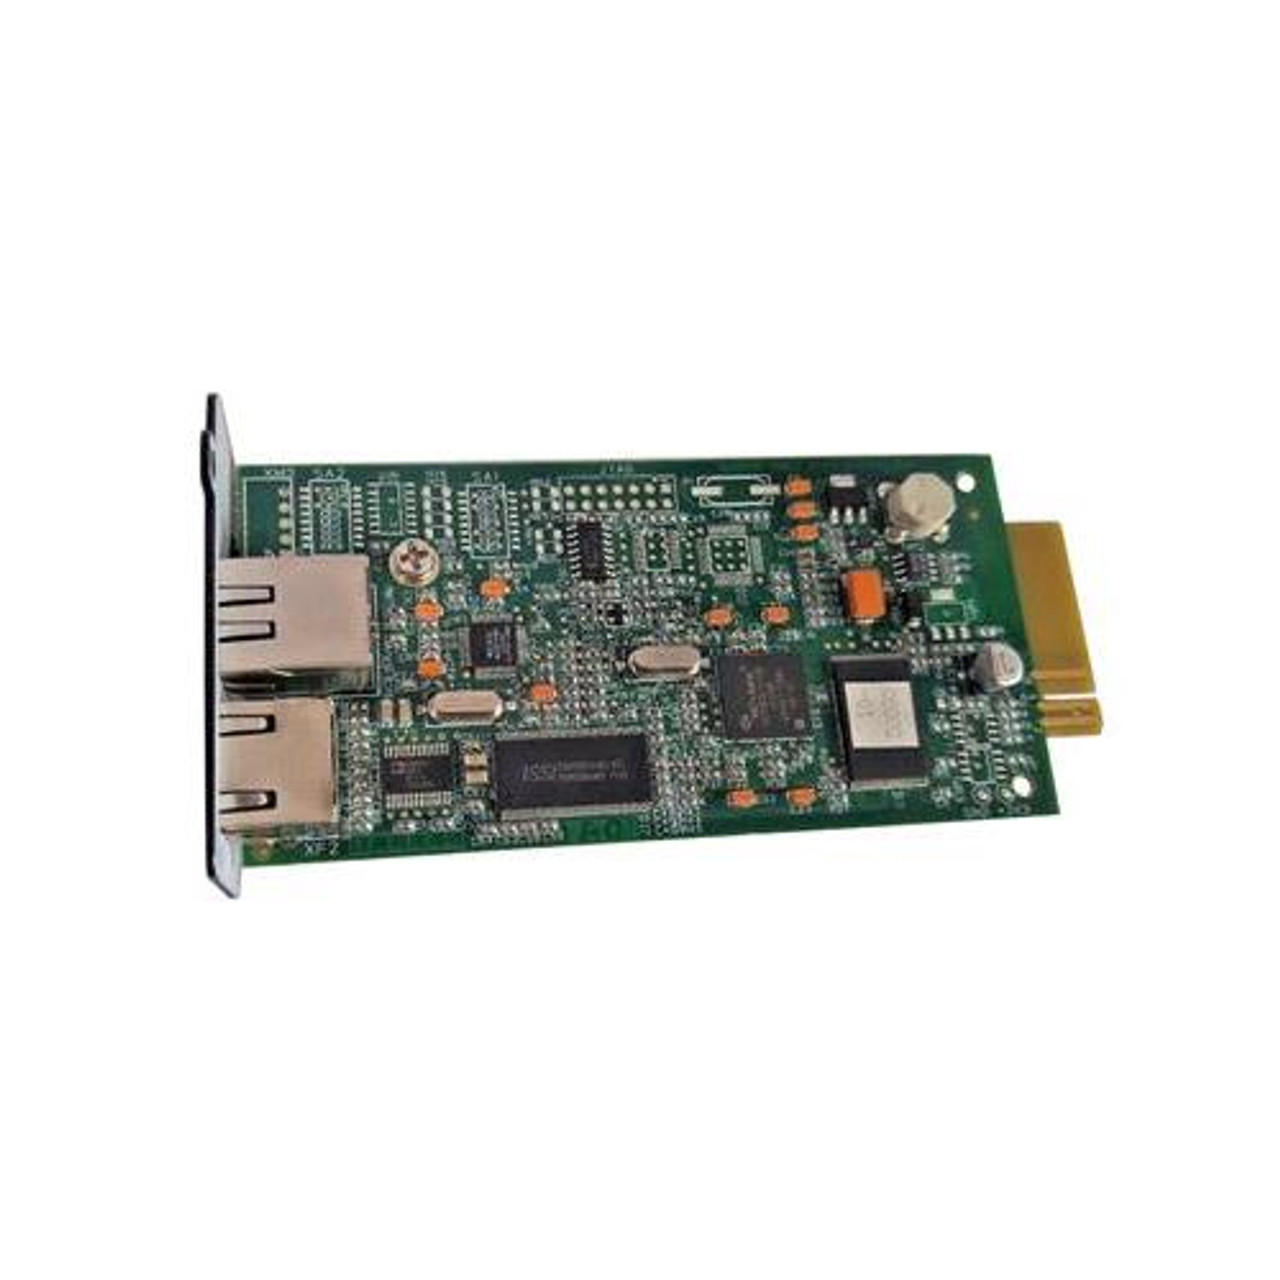 DE779AV HP IEEE1394 / Firewire PCI Card IEEE 1394 FireWire Plug-in Card